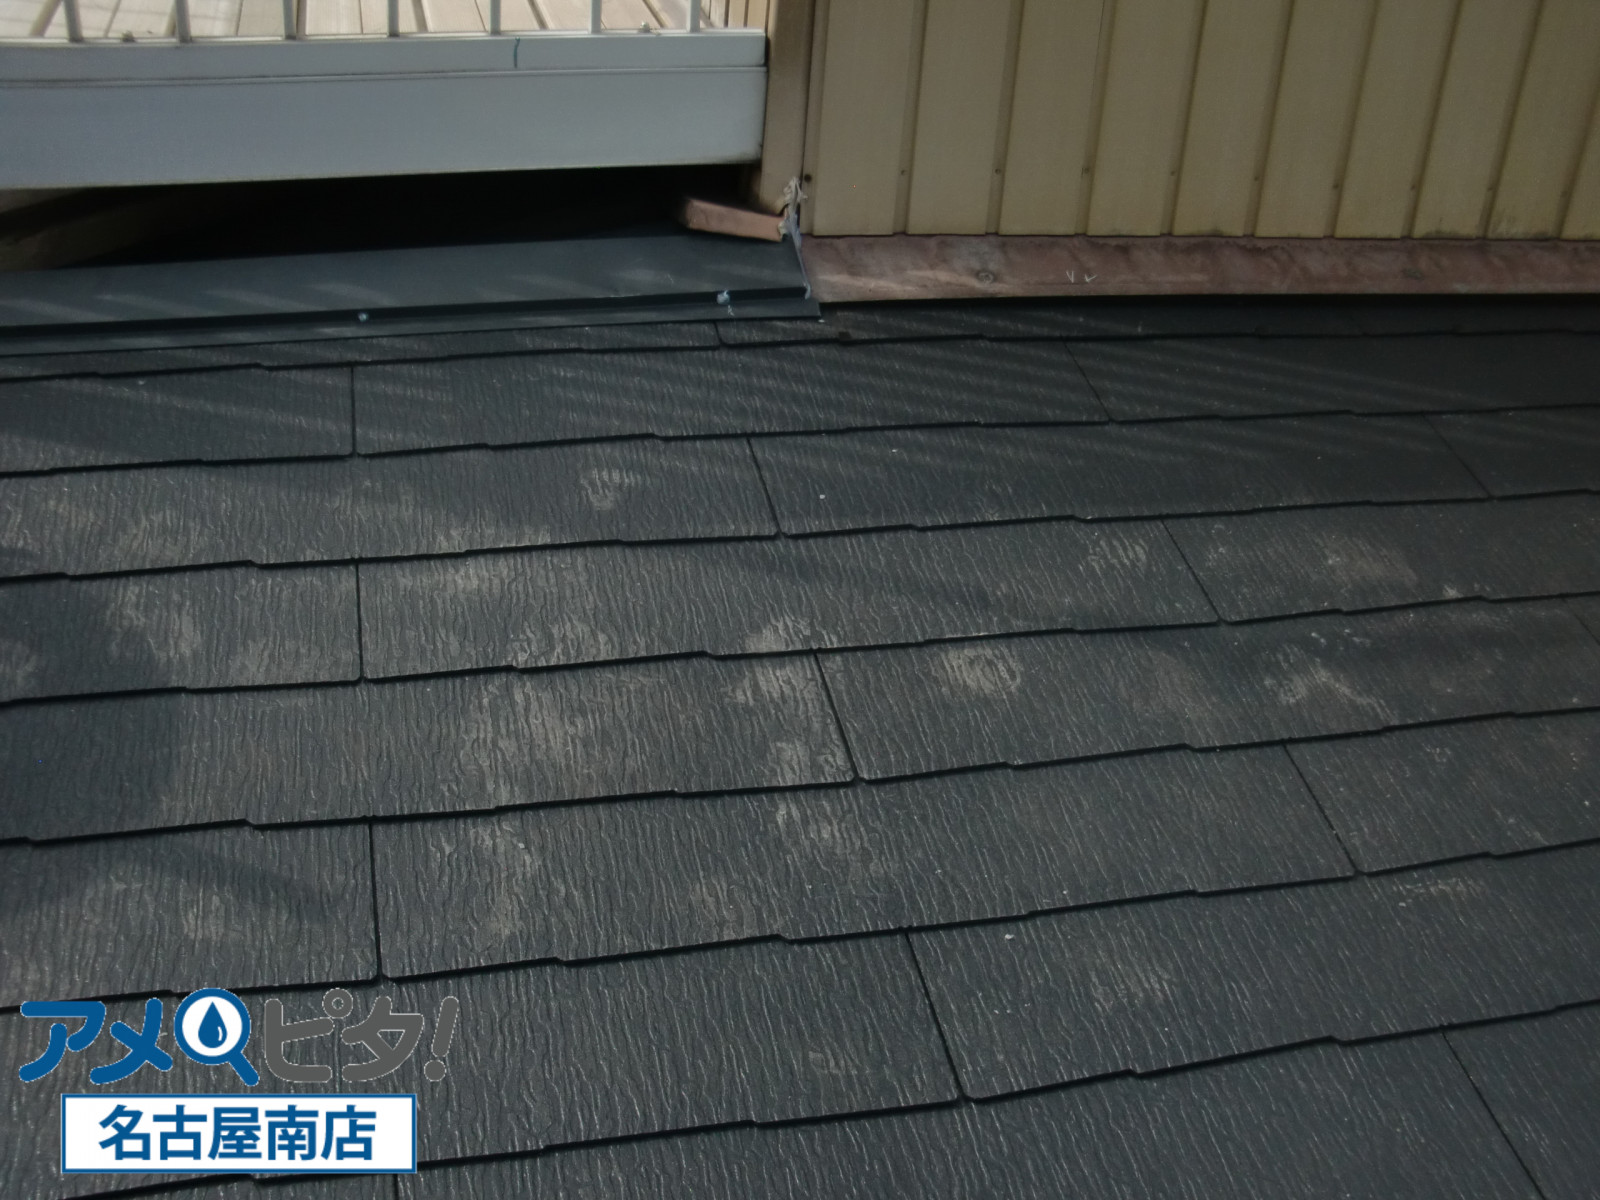 カラーベスト屋根材の施工方法とは